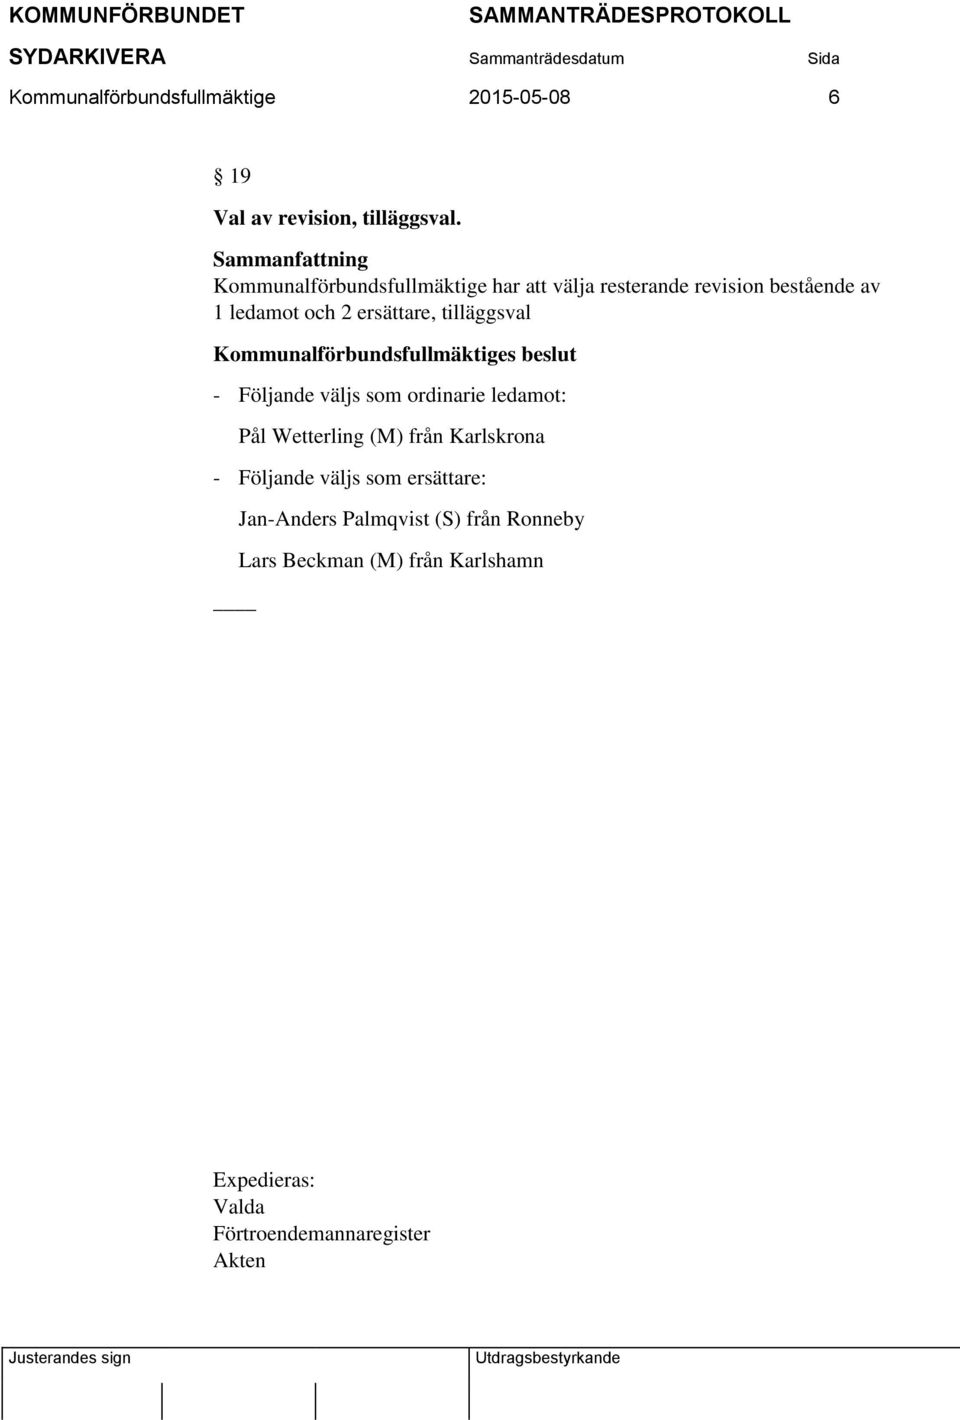 ersättare, tilläggsval - Följande väljs som ordinarie ledamot: Pål Wetterling (M) från Karlskrona -